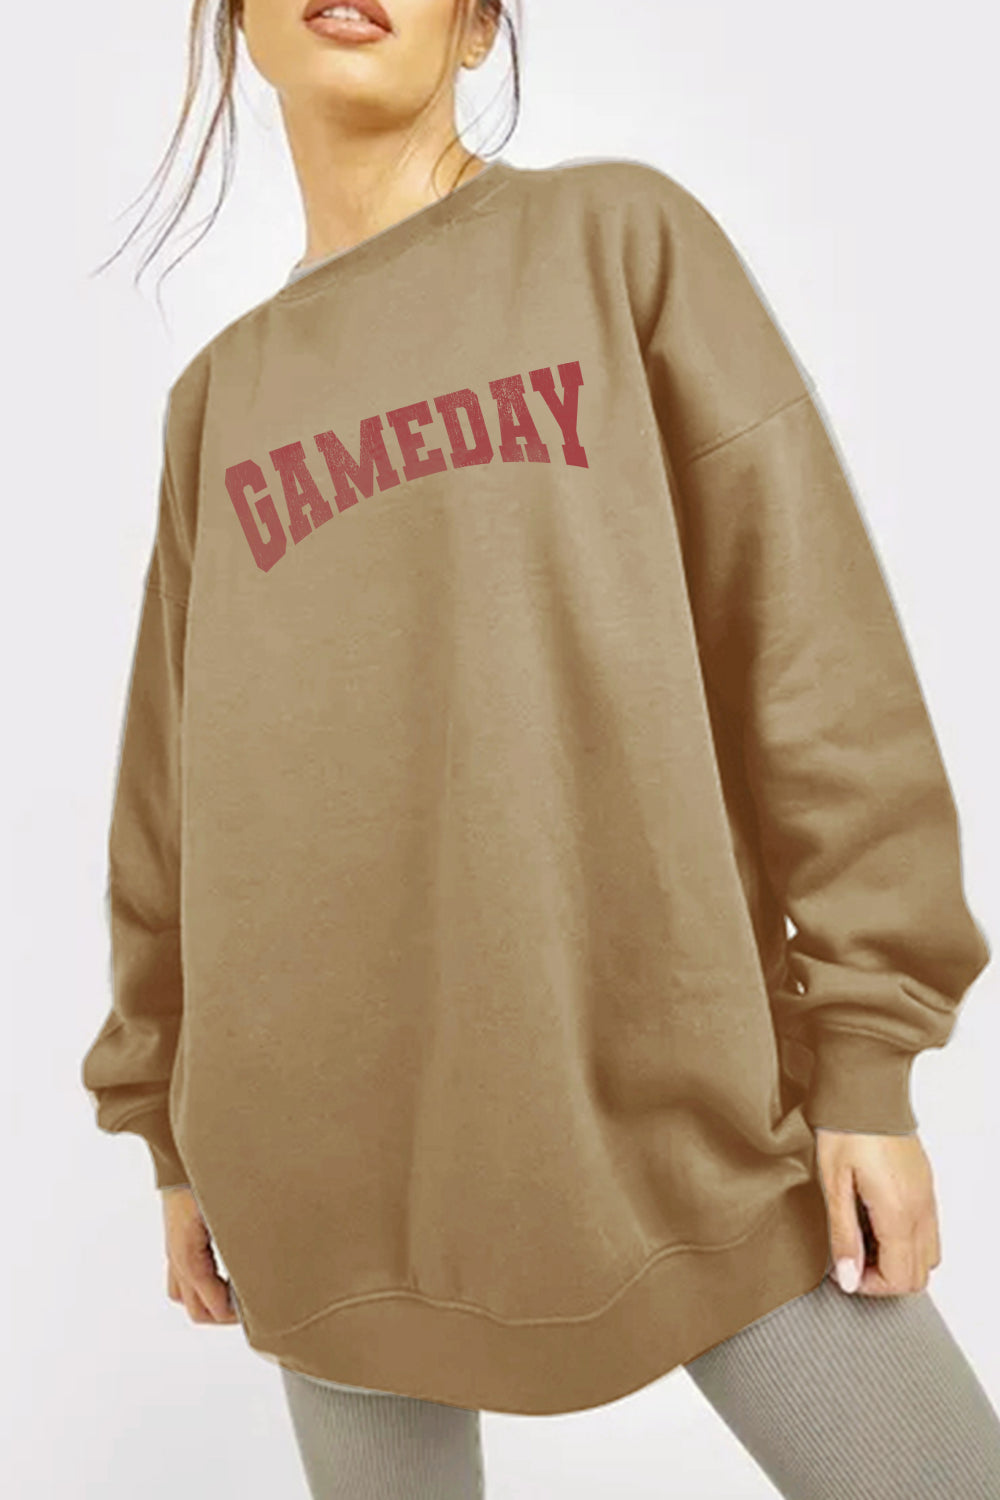 GAMEDAY Graphic Sweatshirt | AdoreStarr